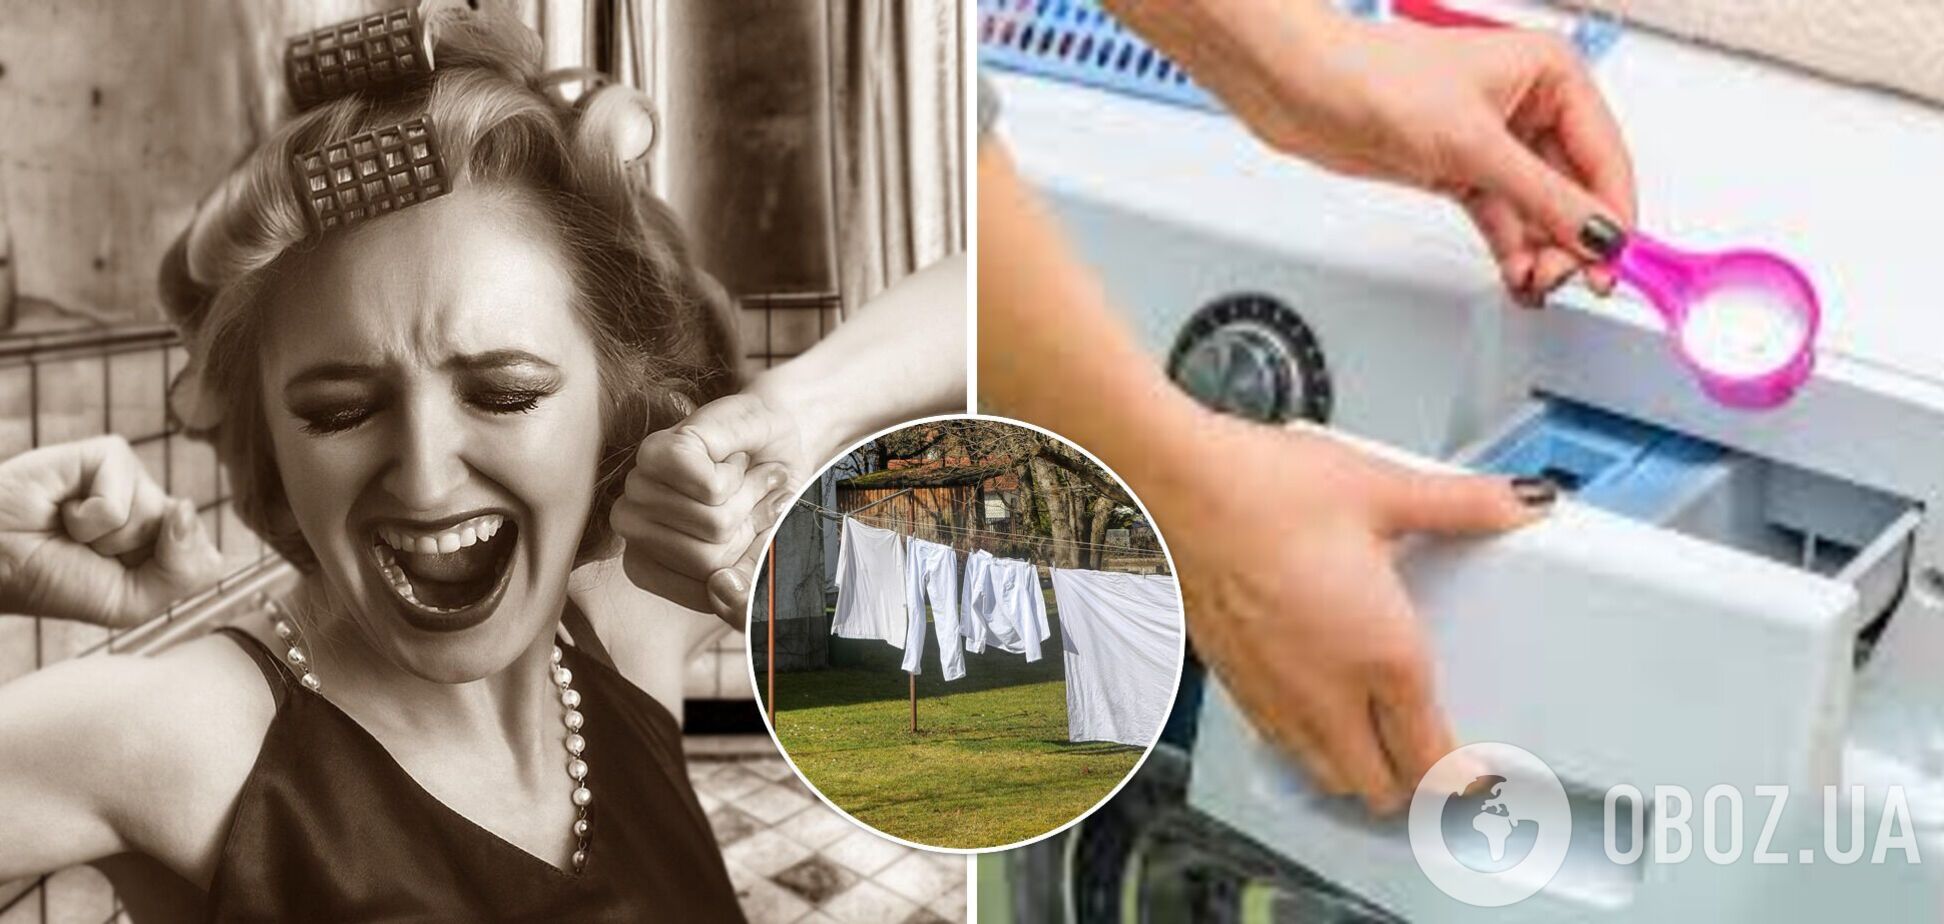 Для чего нужны три отсека в стиральной машине и почему важно их не перепутать